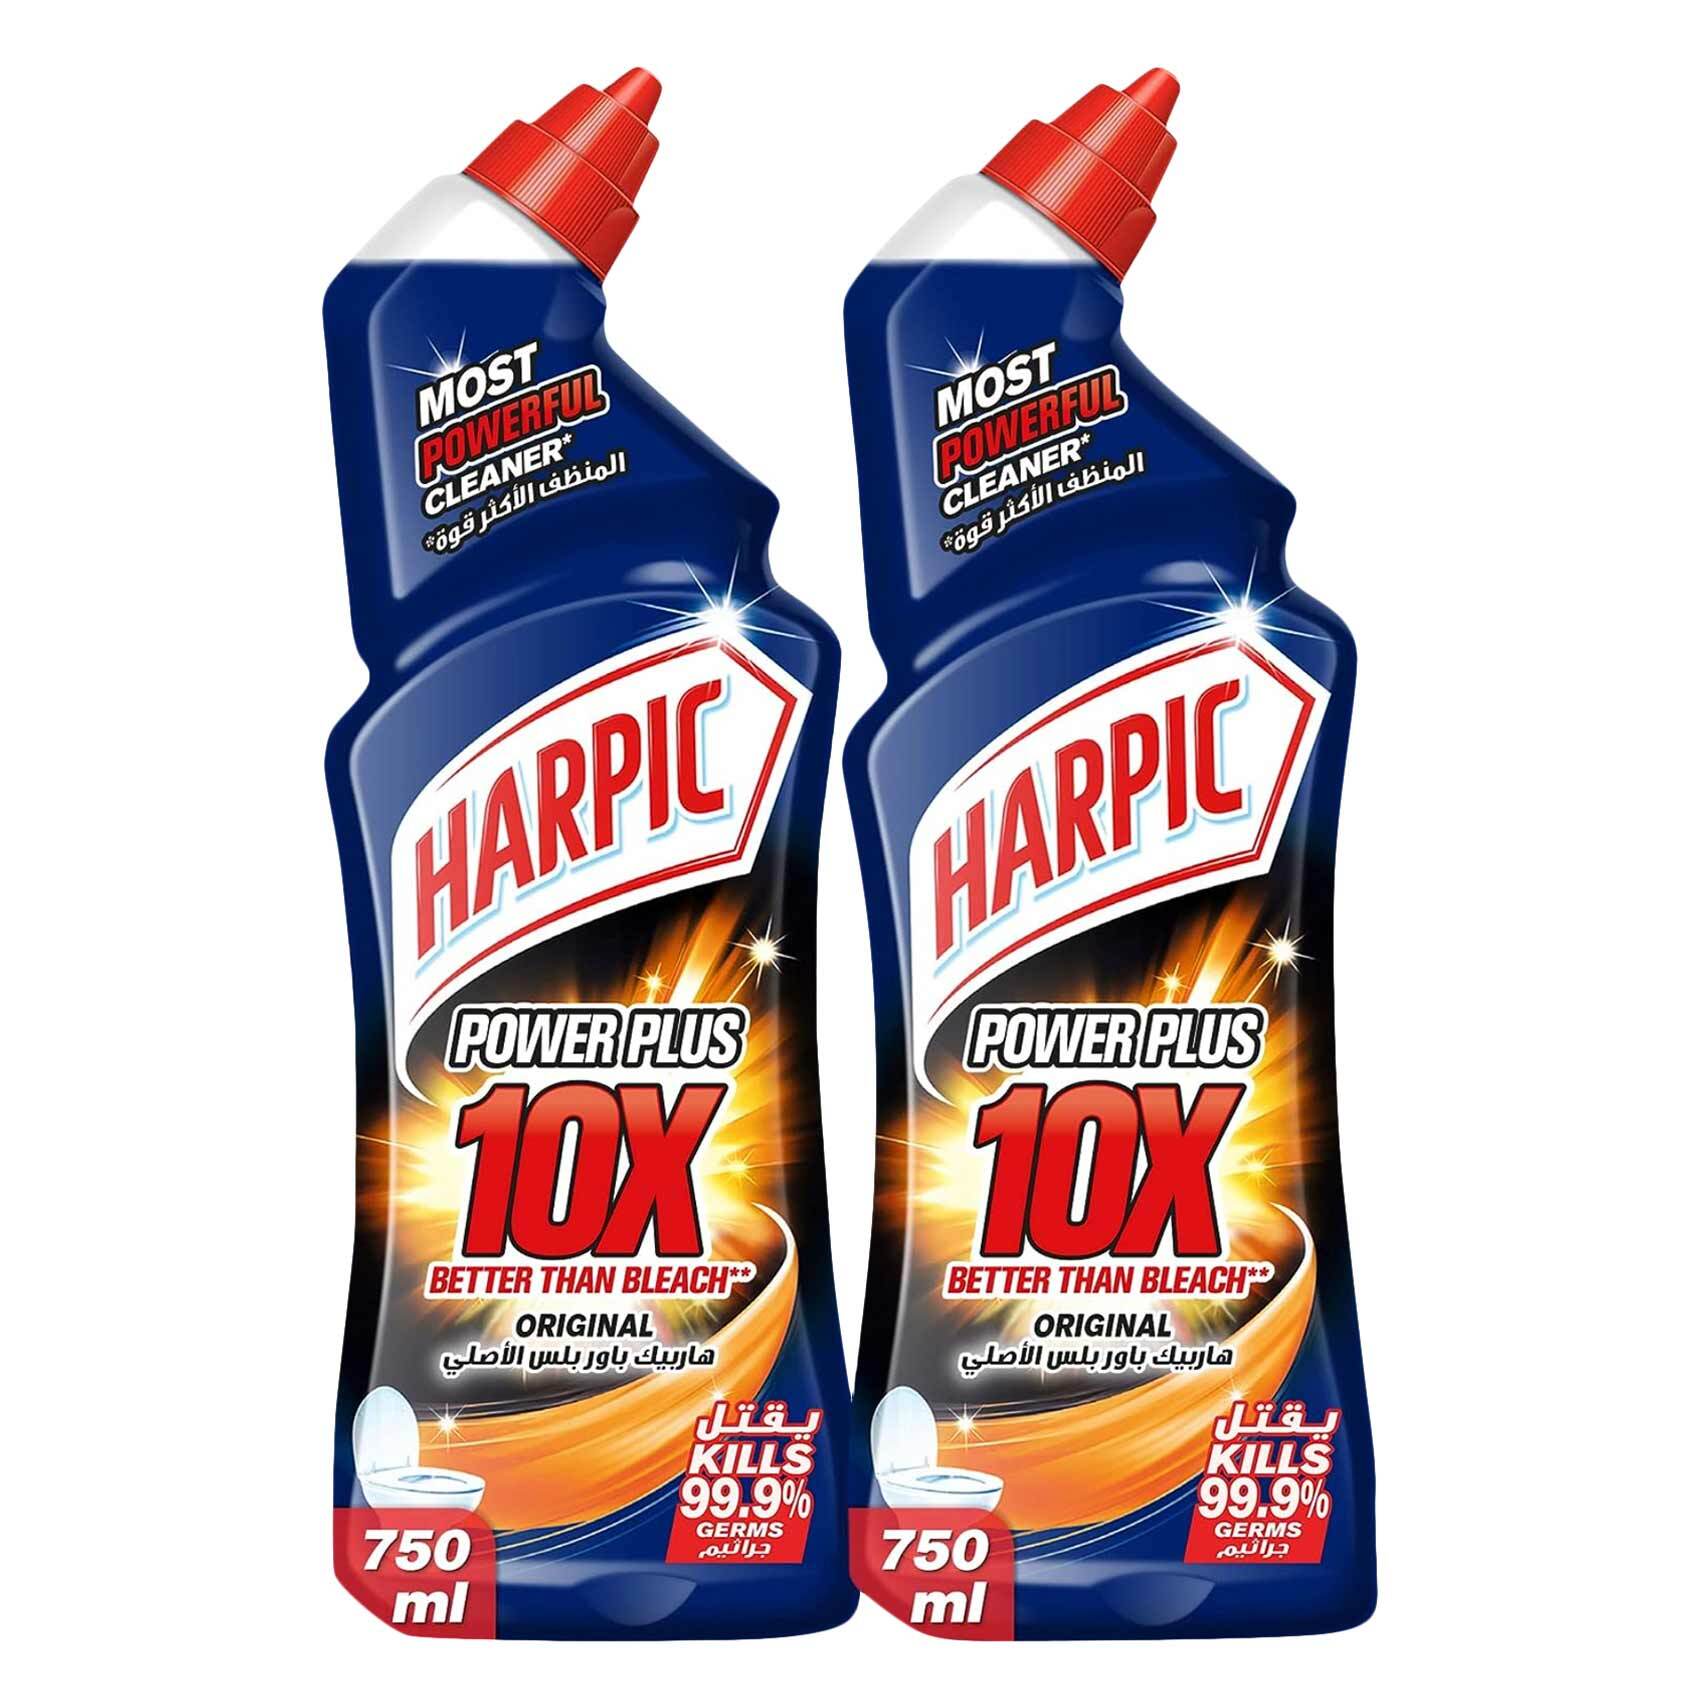 Harpic - Liquid Power Plus + Bathroom Cleaner